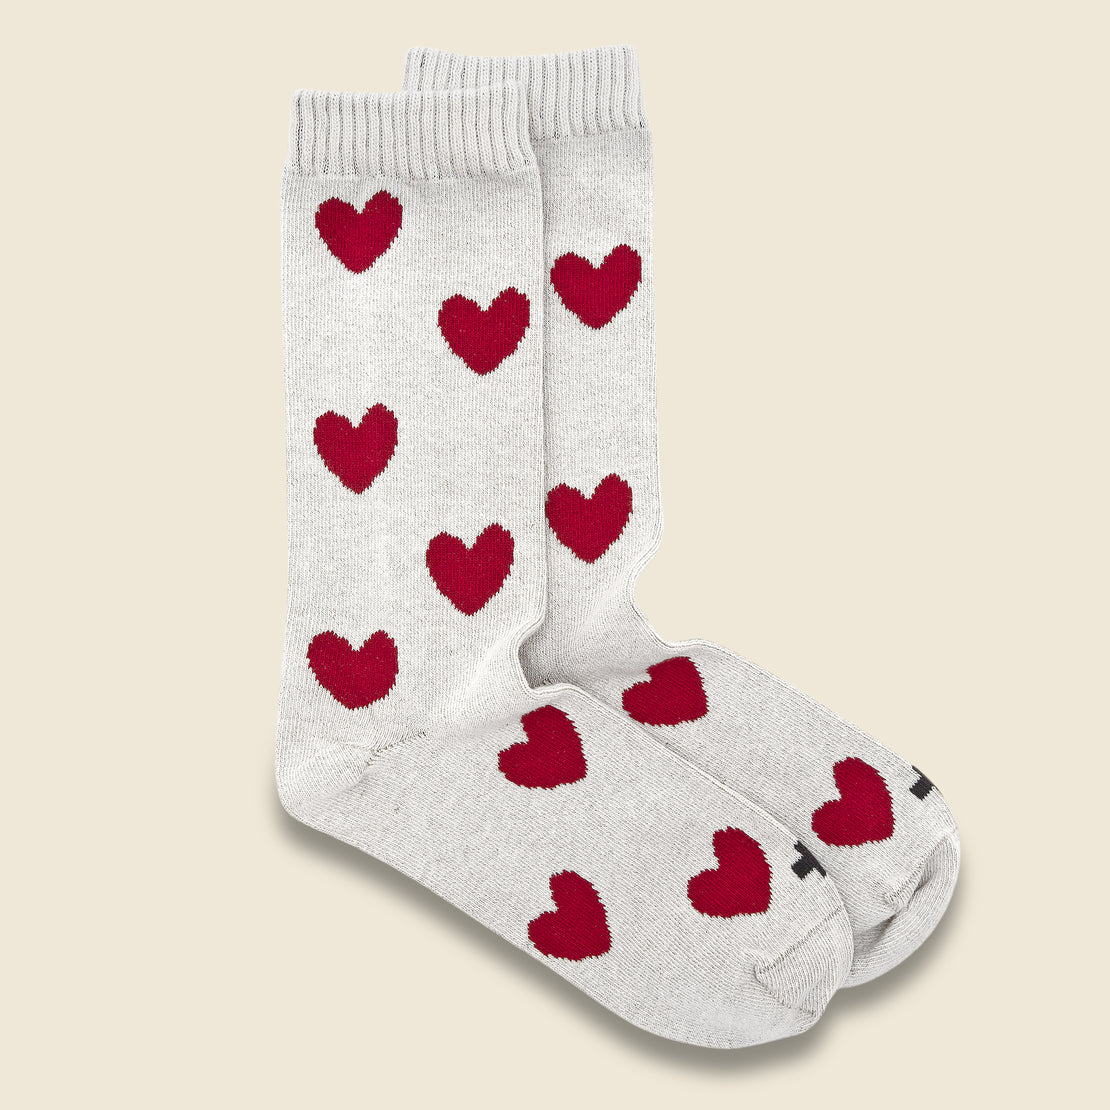 Imogene + Willie Heart Socks - Natural/Red